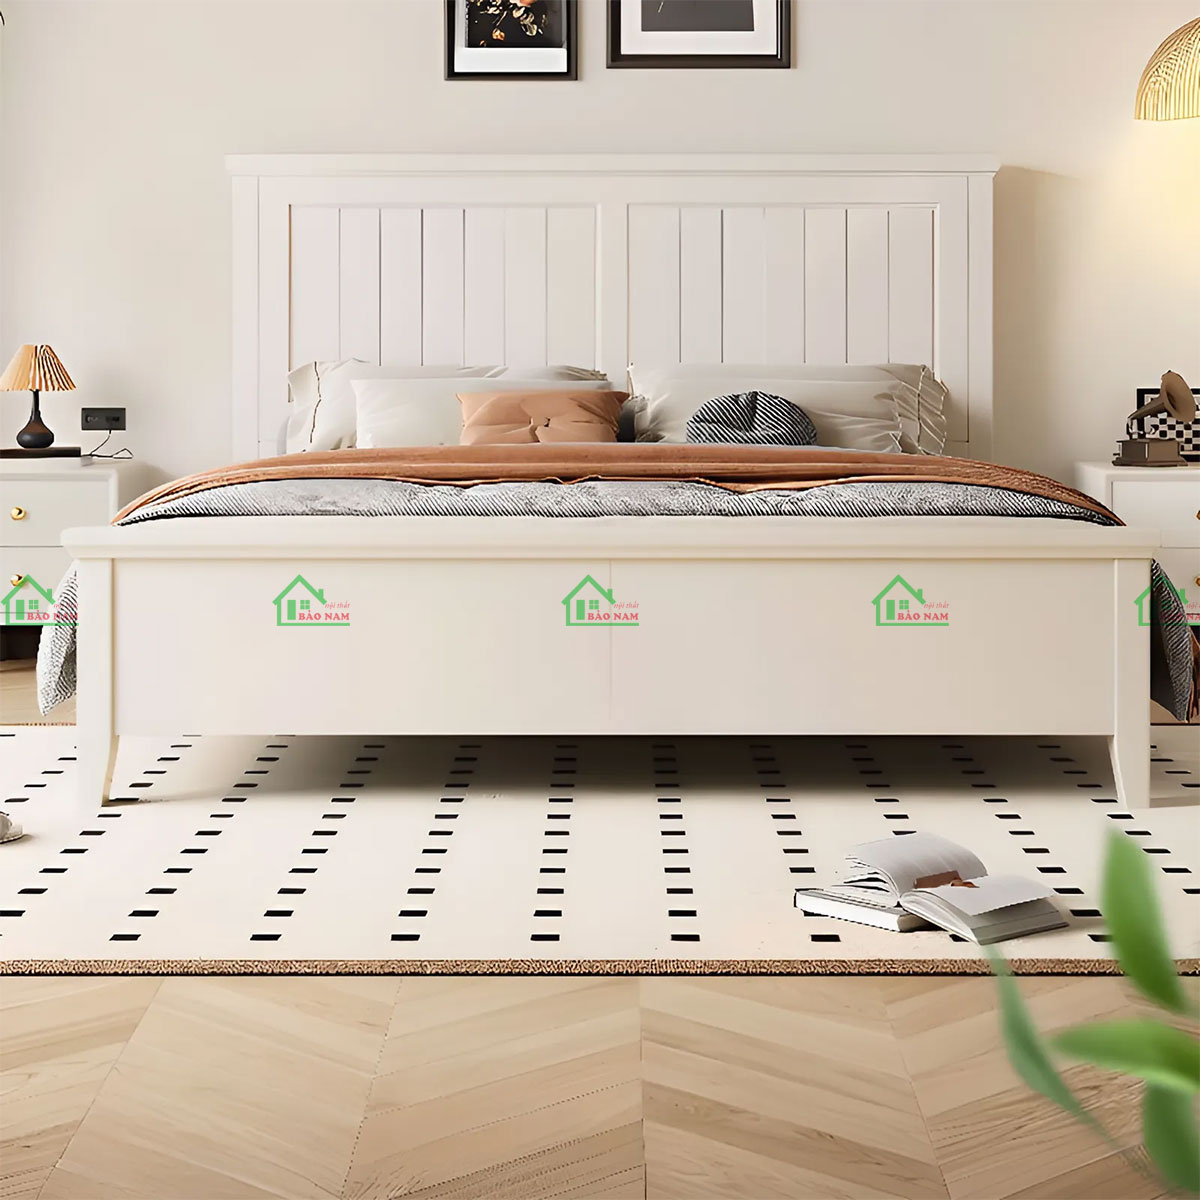 Giường ngủ gỗ có chân cao hiện đại, tinh tế